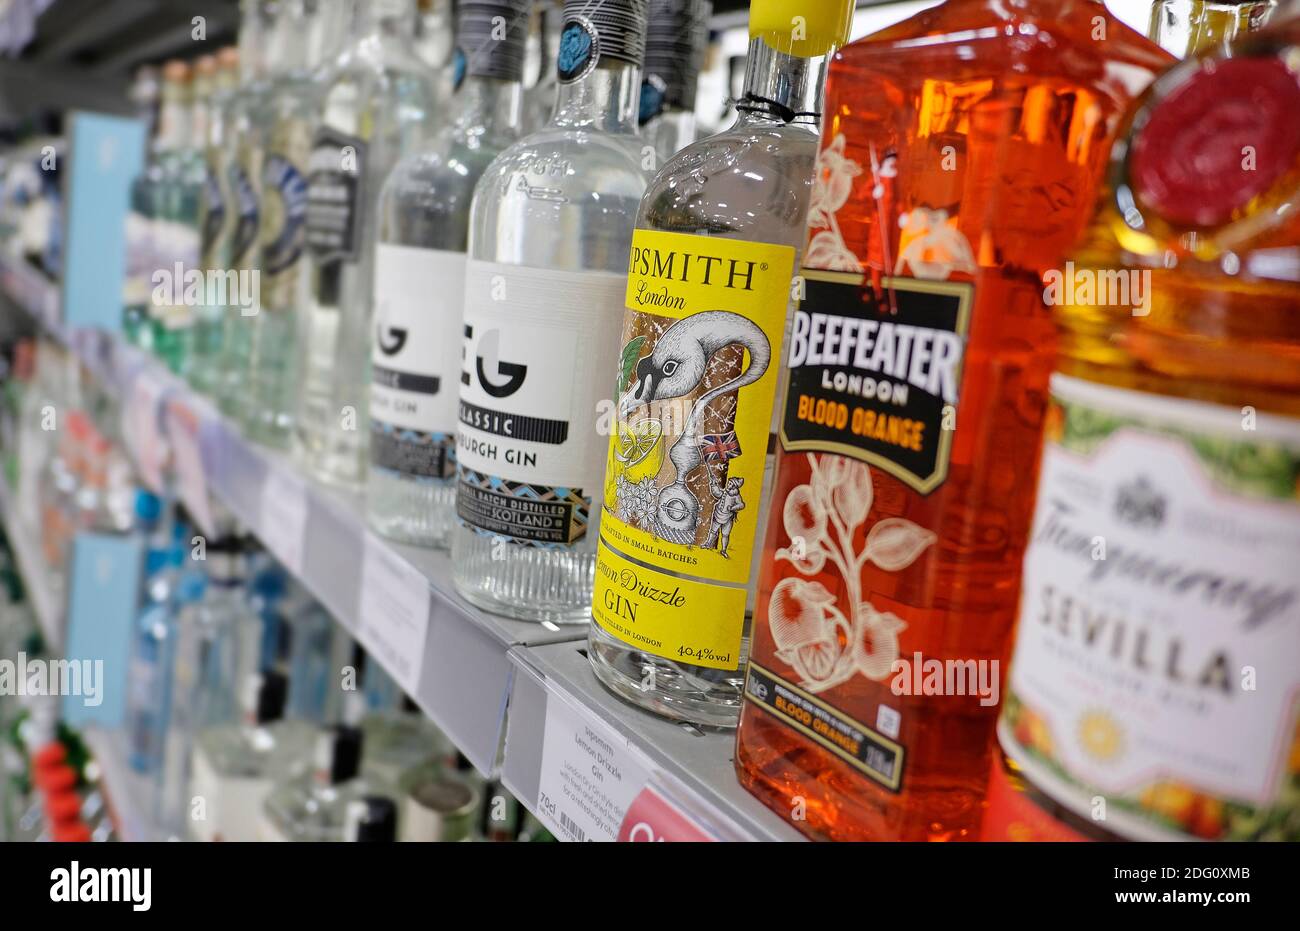 especialidad ginebras en las estanterías de los supermercados, norfolk, inglaterra Foto de stock